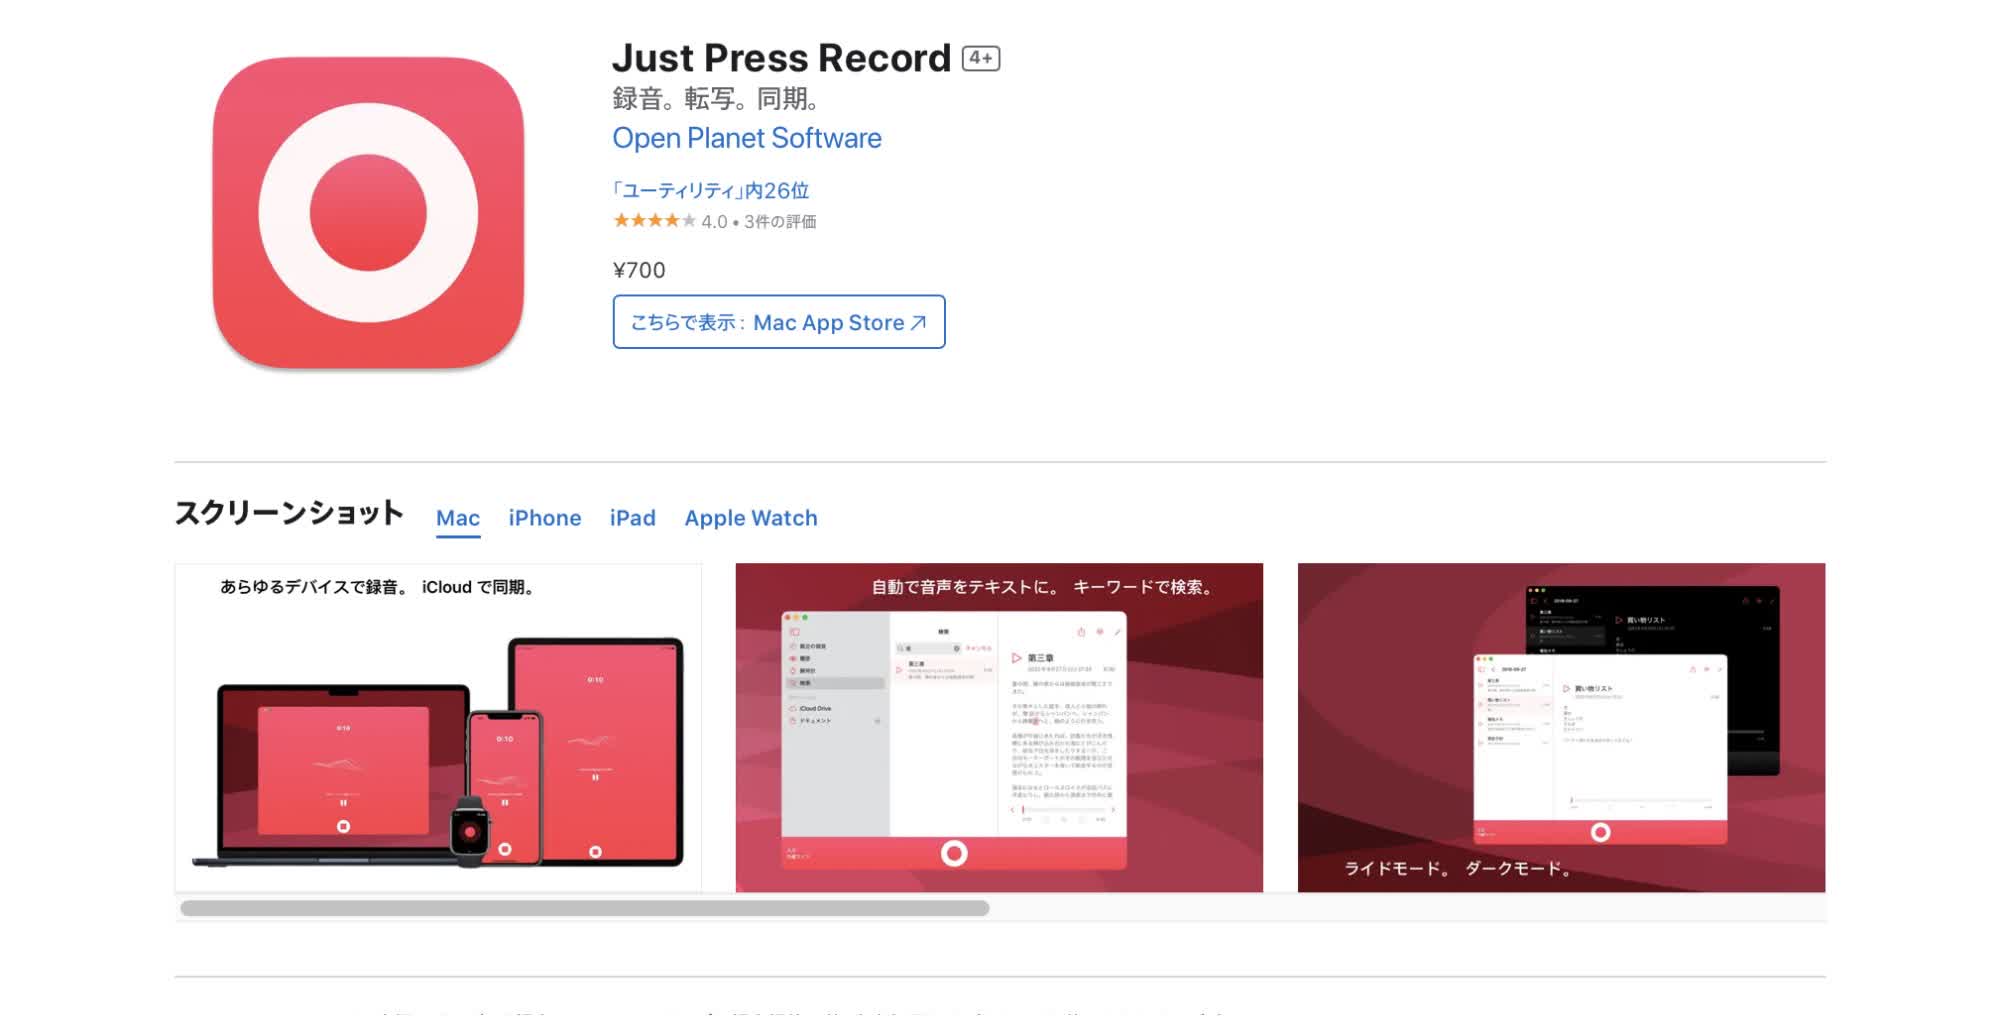 Just Press Record